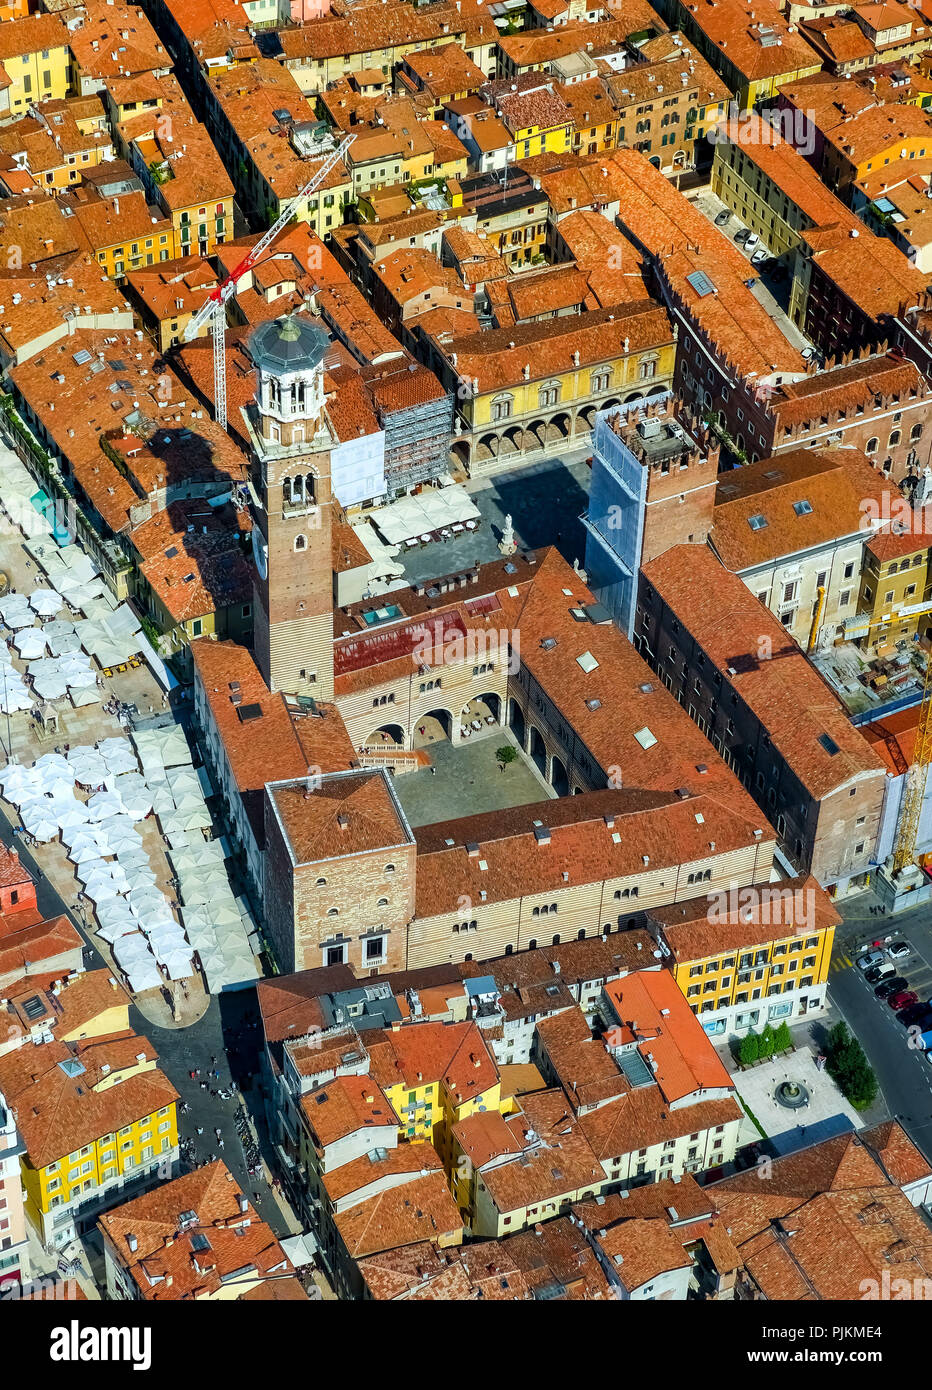 Vista aerea, Piazza delle Erbe e Piazza, Domus Mercatorum, la Torre dei Lamberti, centro di Verona, Verona, Italia settentrionale, Veneto, Italia Foto Stock